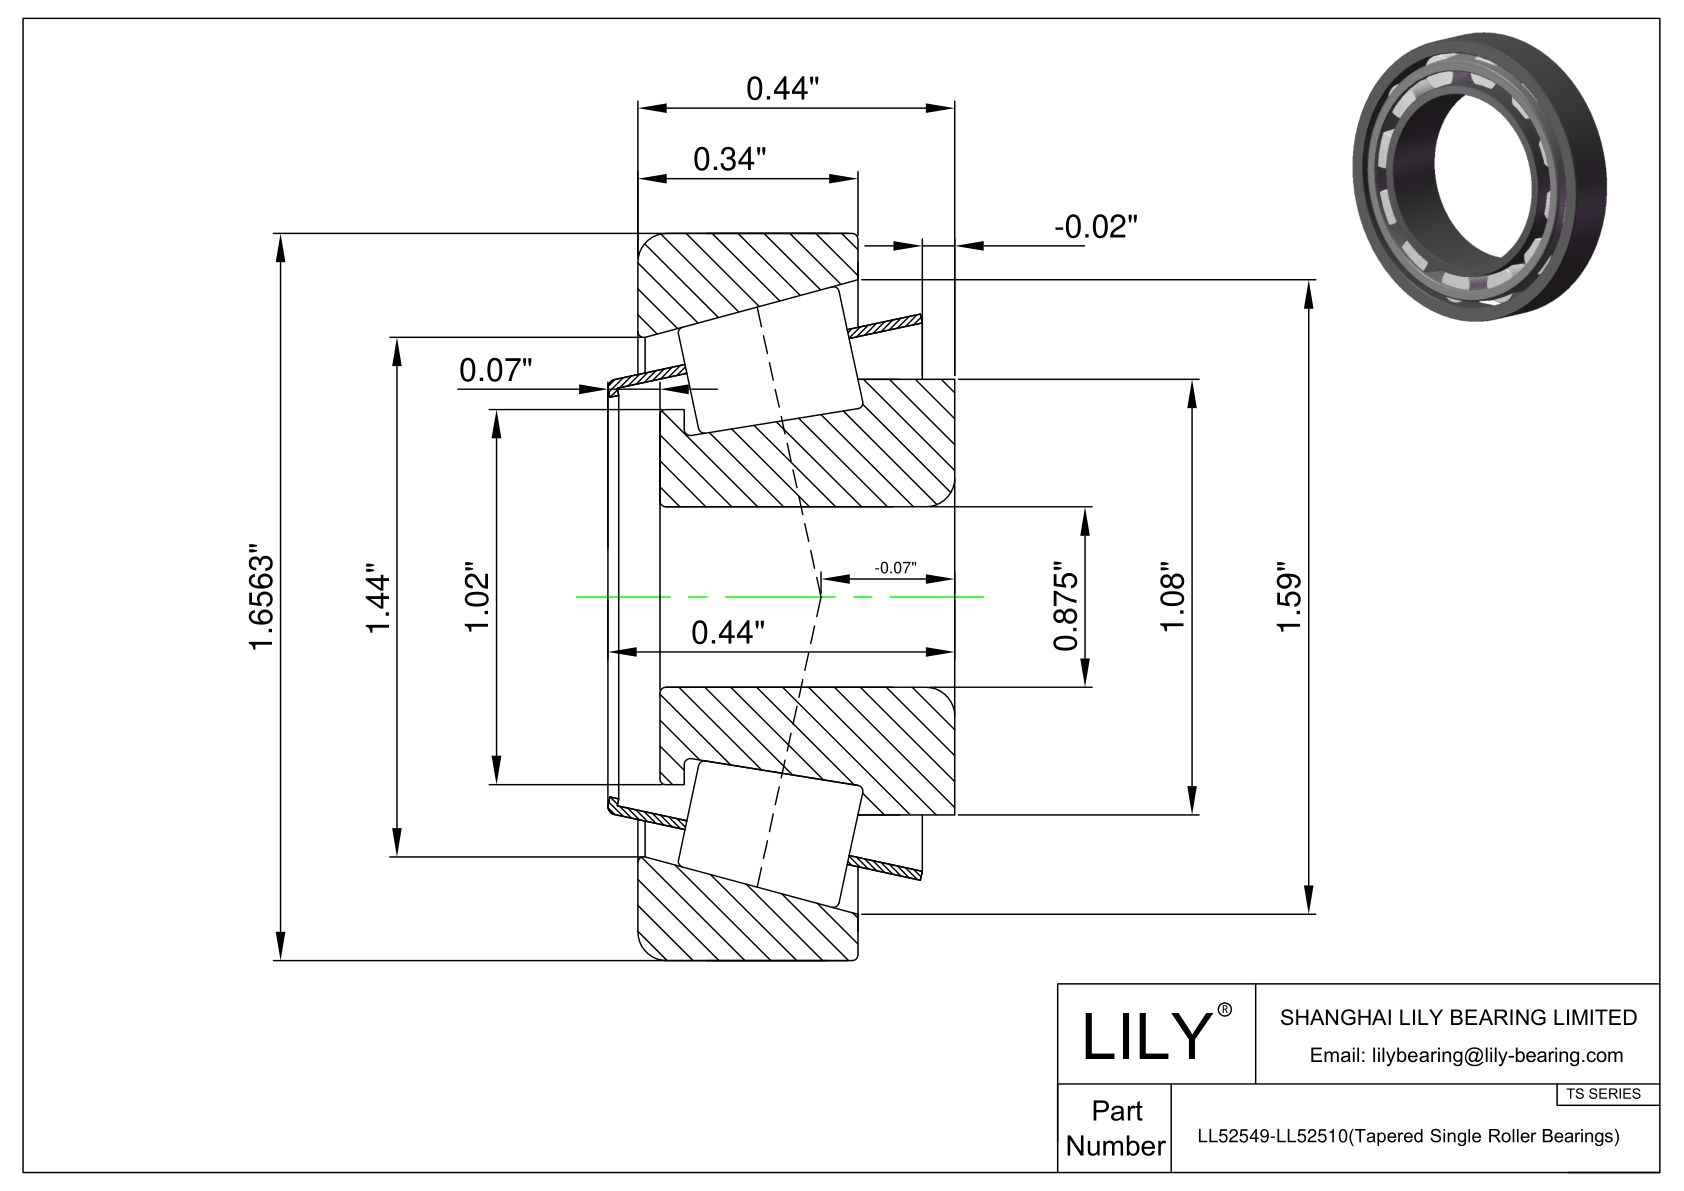 LL52549-LL52510 TS系列(圆锥单滚子轴承)(英制) CAD图形